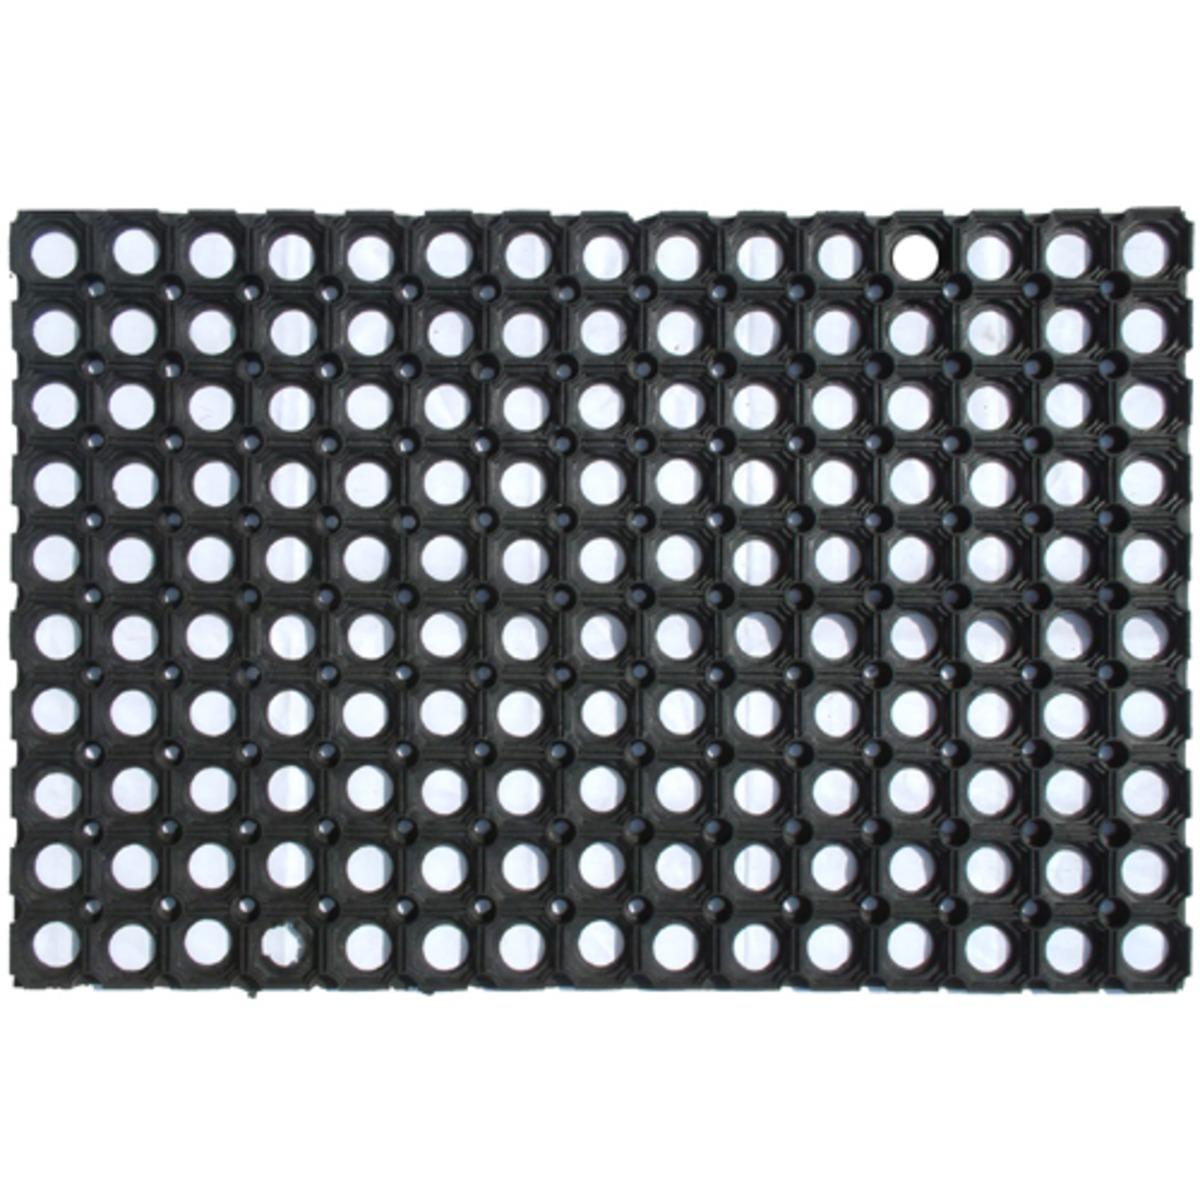 Tapis grille en caoutchouc - 60 x 40 cm - Noir